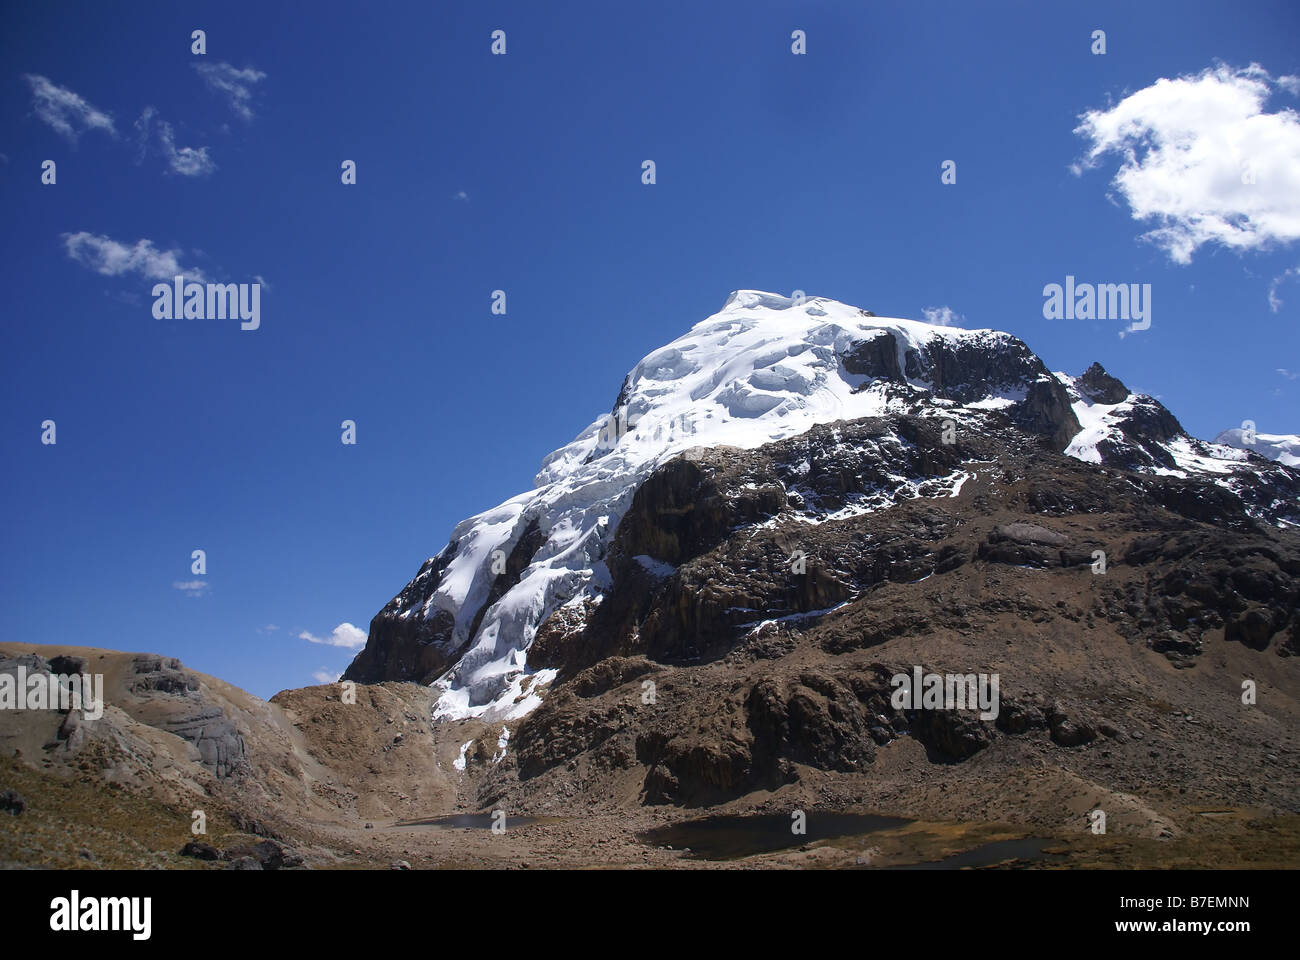 Cuyoc montagne avec glacier suspendu Andes Cordillère Huayhuash Pérou Amérique du Sud Banque D'Images